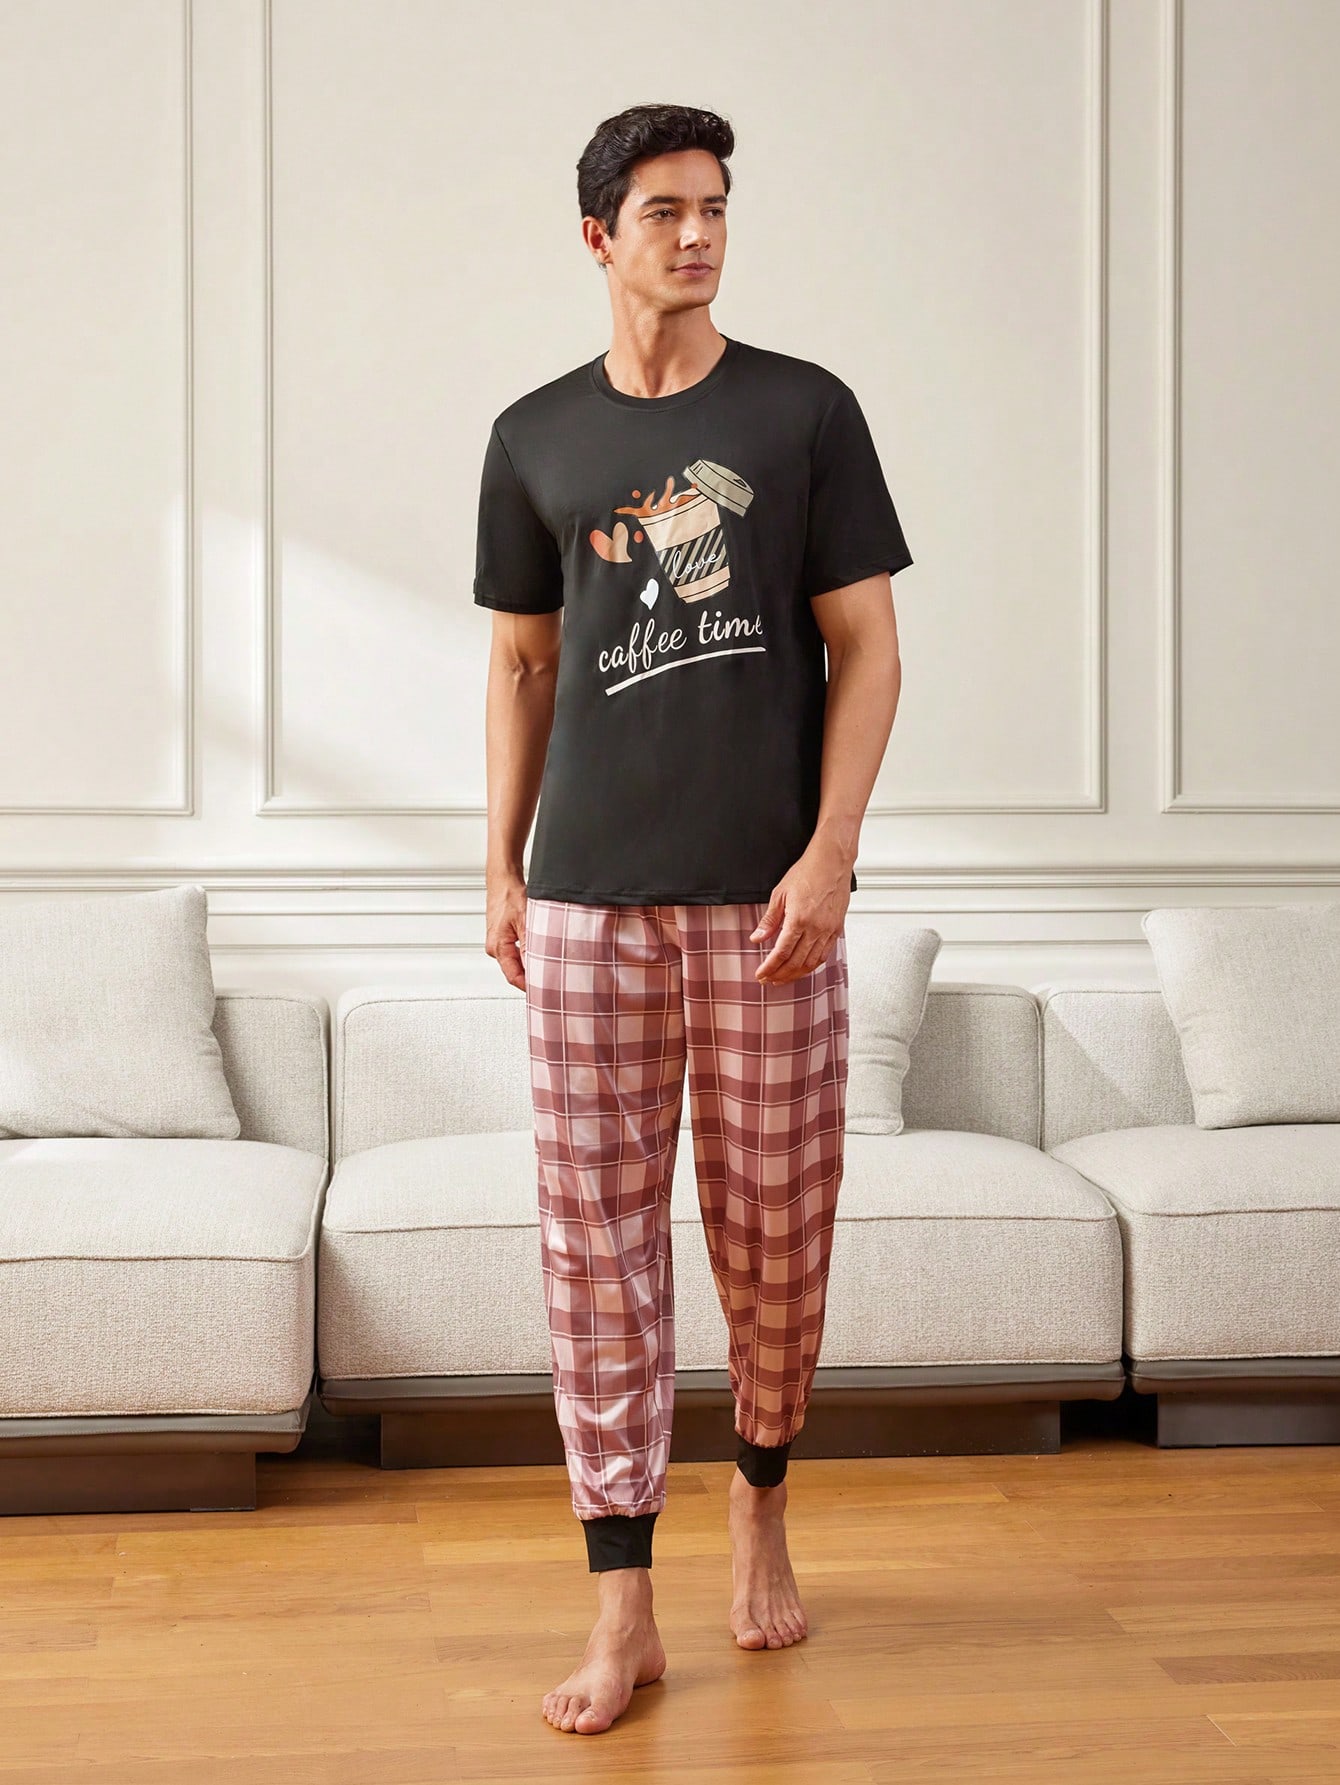 Мужская футболка с коротким рукавом с принтом кофе и комплект домашней одежды, многоцветный мужская футболка танцующий стаканчик кофе l черный